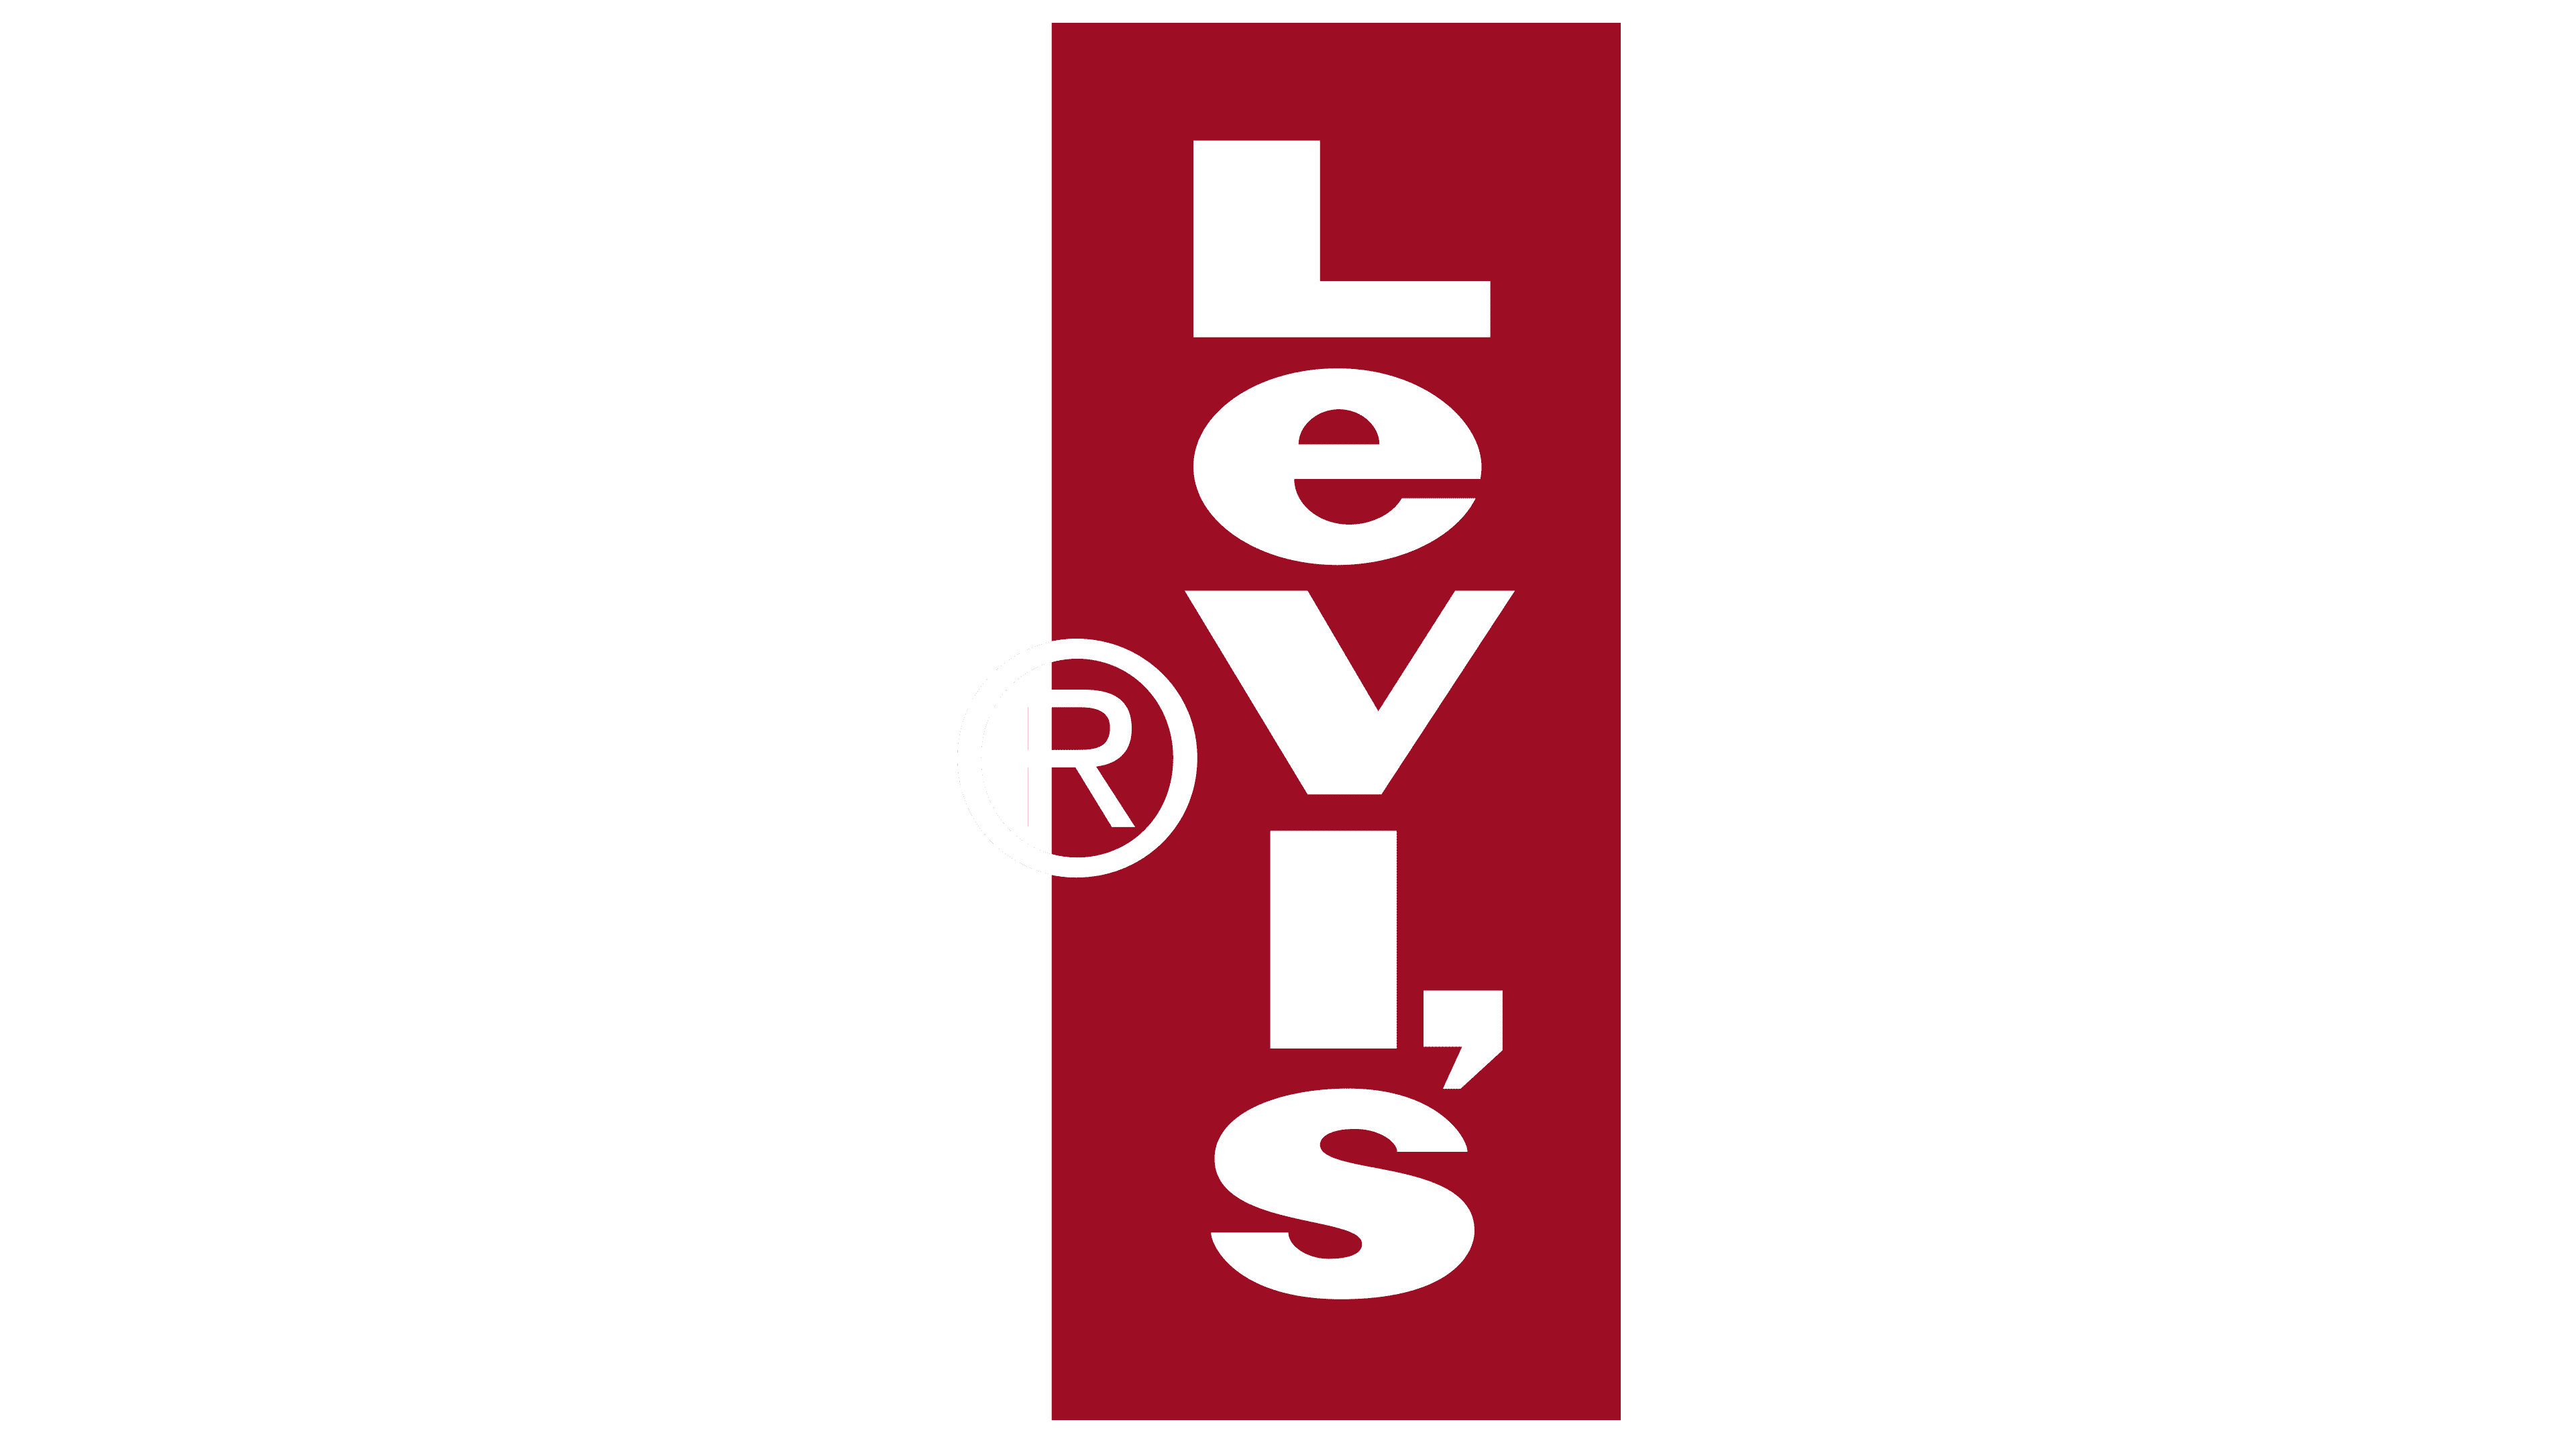 Levis Logo Png Logo Image for Free - Free Logo Image